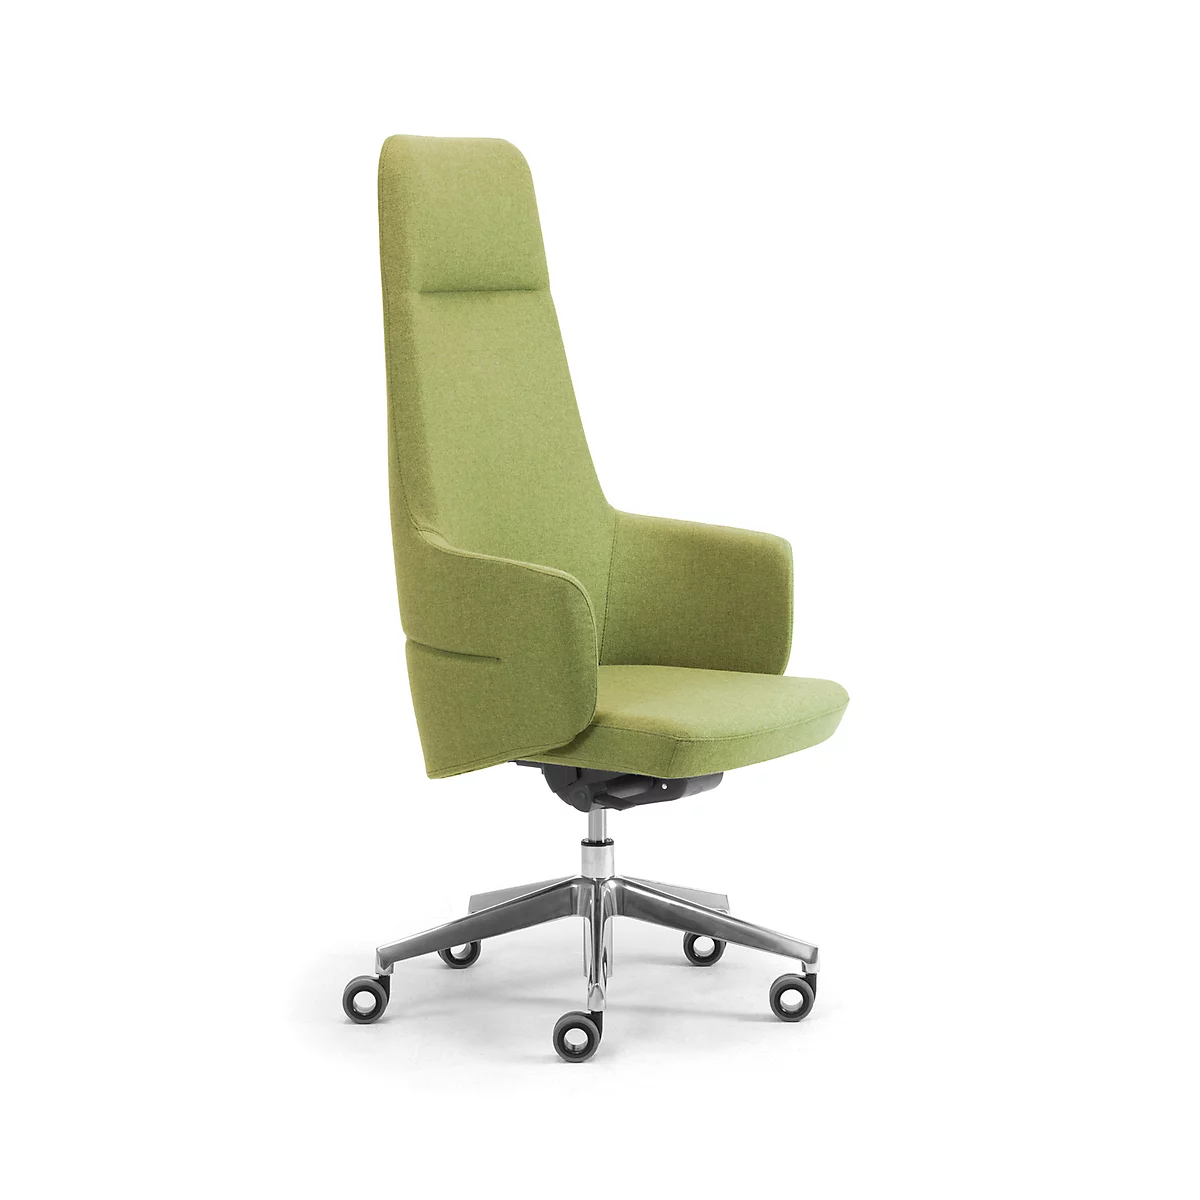 Sillón de dirección de respaldo alto OPERA, con reposabrazos, mecanismo síncrono, asiento plano cómodo, tapizado tejido FENICE, verde